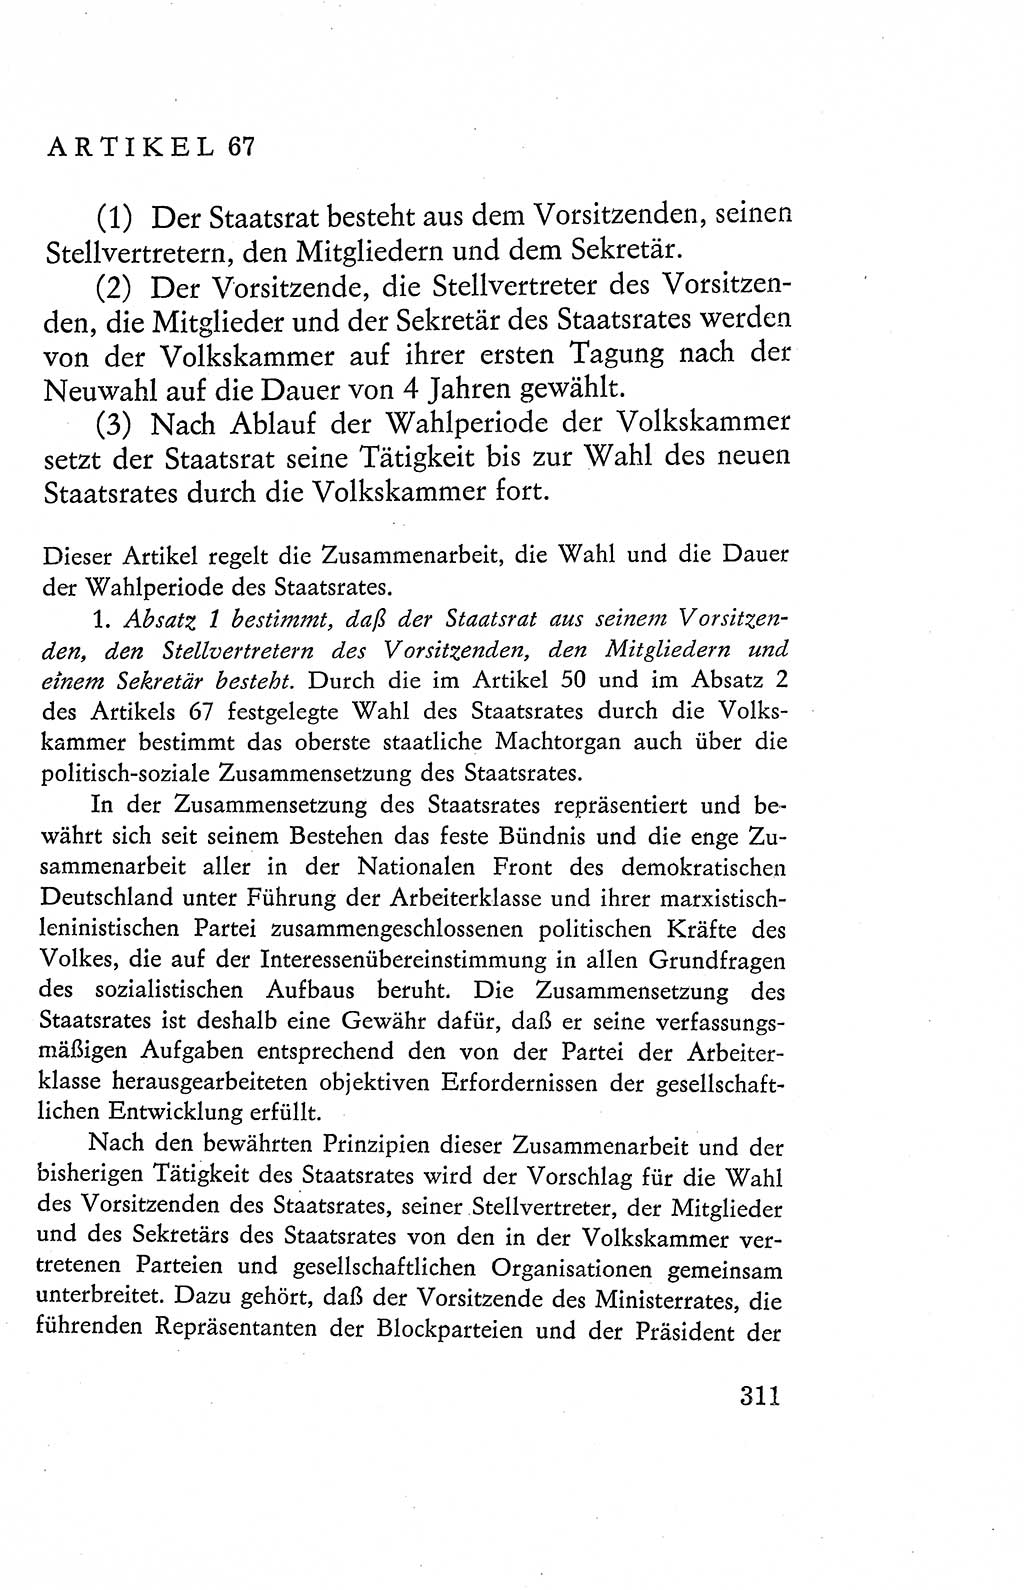 Verfassung der Deutschen Demokratischen Republik (DDR), Dokumente, Kommentar 1969, Band 2, Seite 311 (Verf. DDR Dok. Komm. 1969, Bd. 2, S. 311)